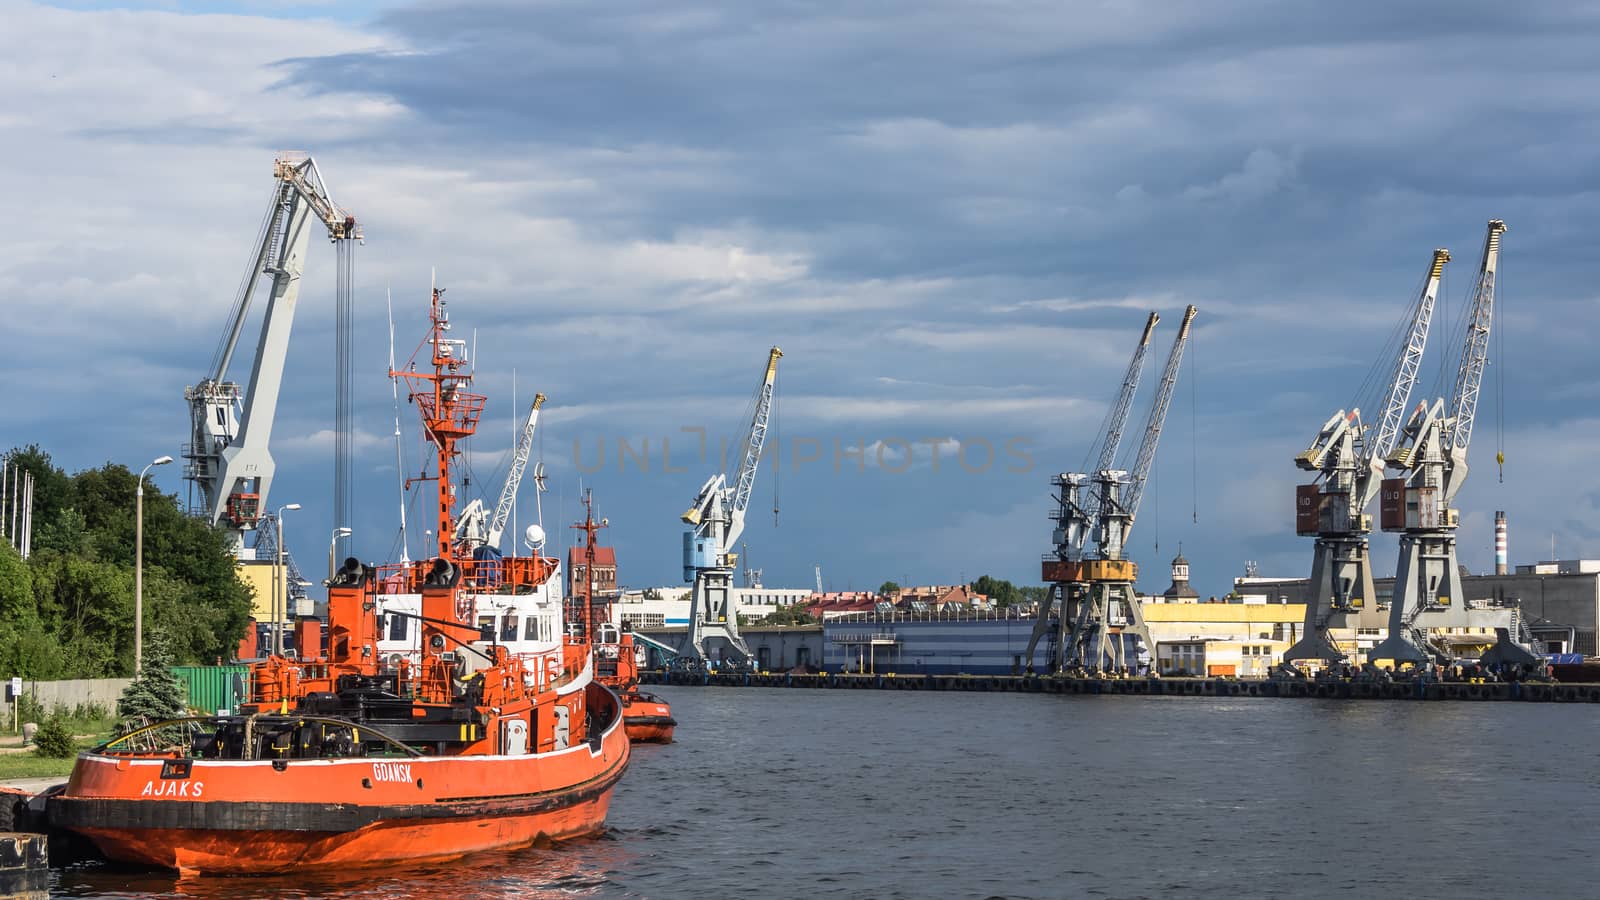 Tugboats at the quay by pawel_szczepanski